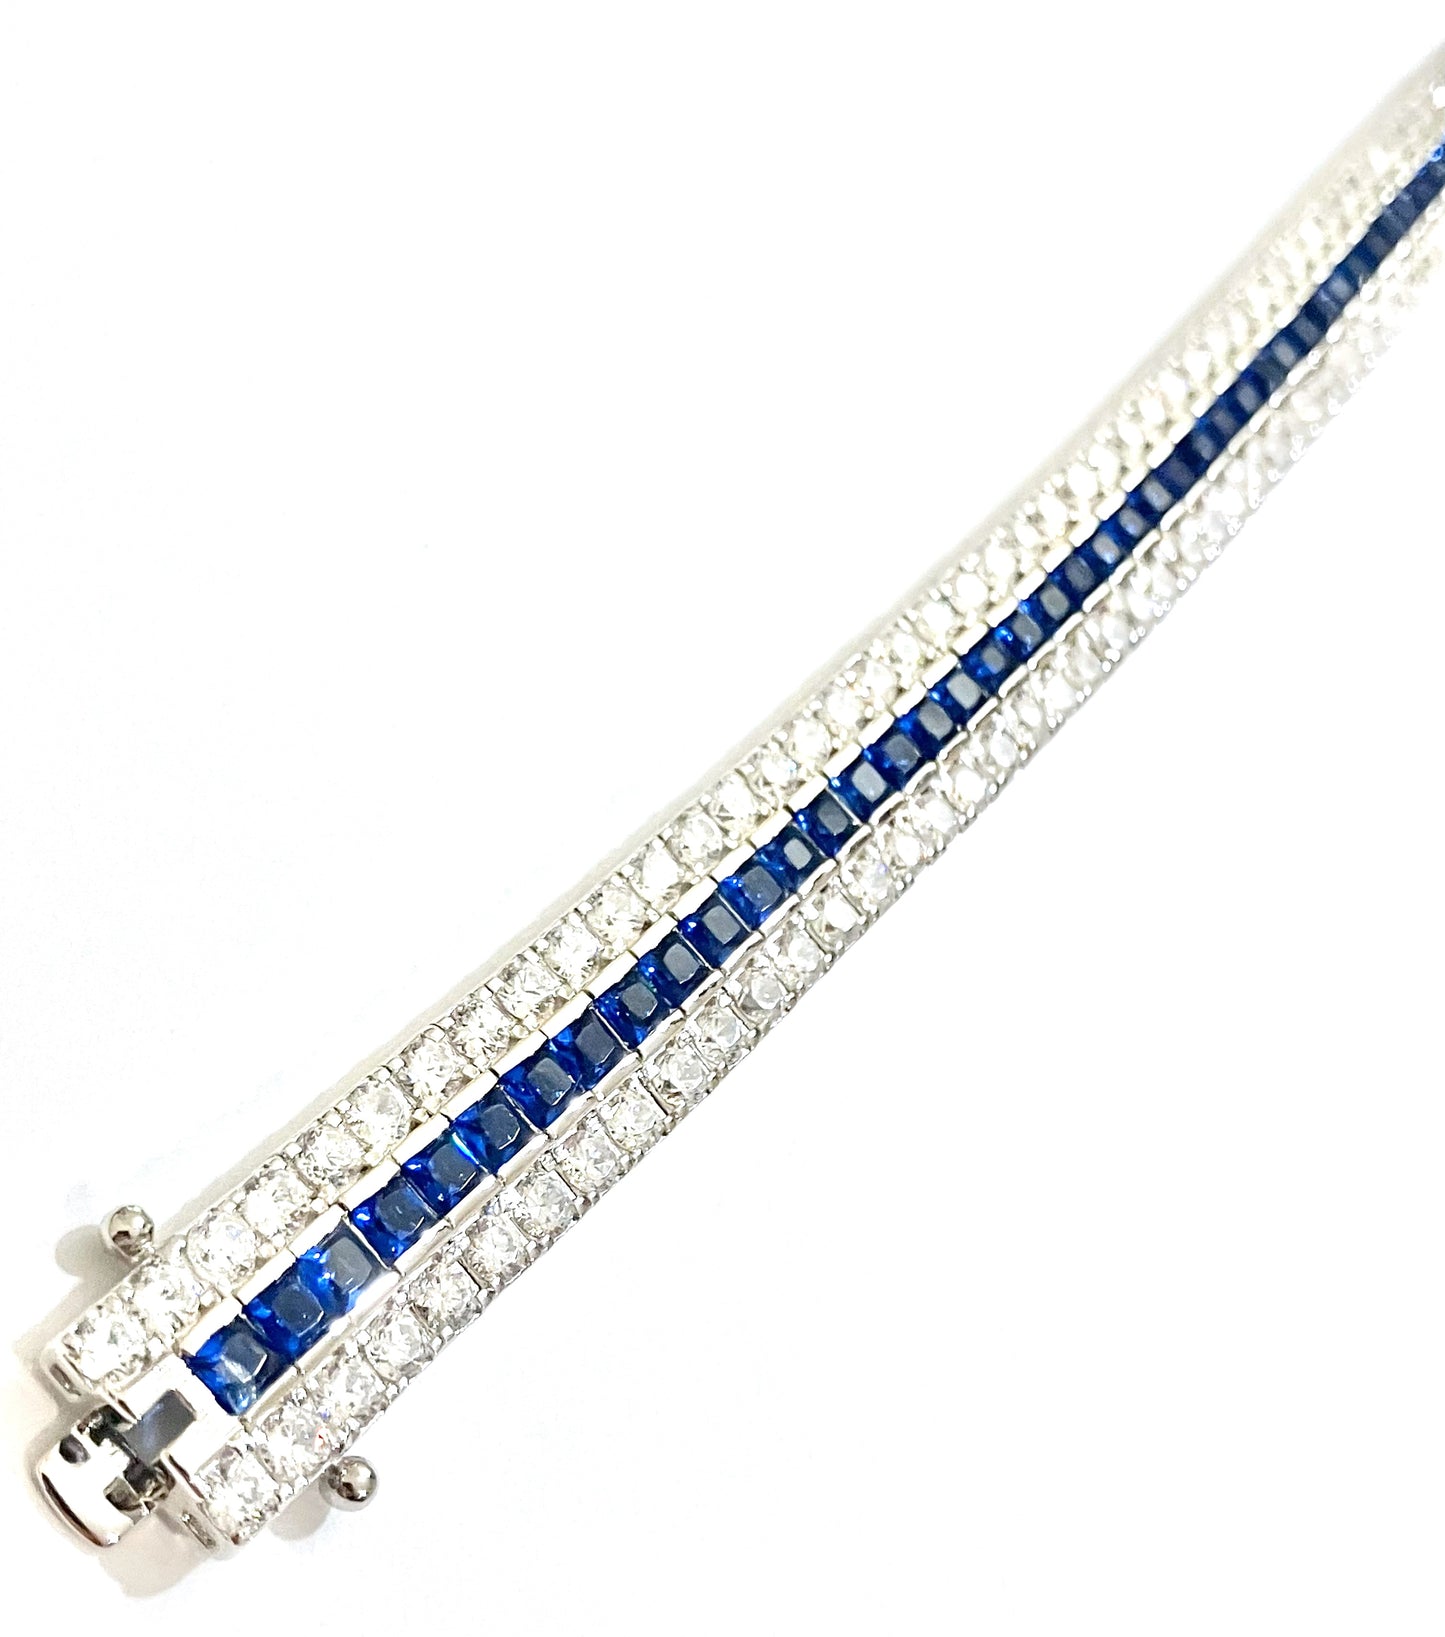 Tri-Row "Diamond" and "Sapphire" Tennis Bracelet